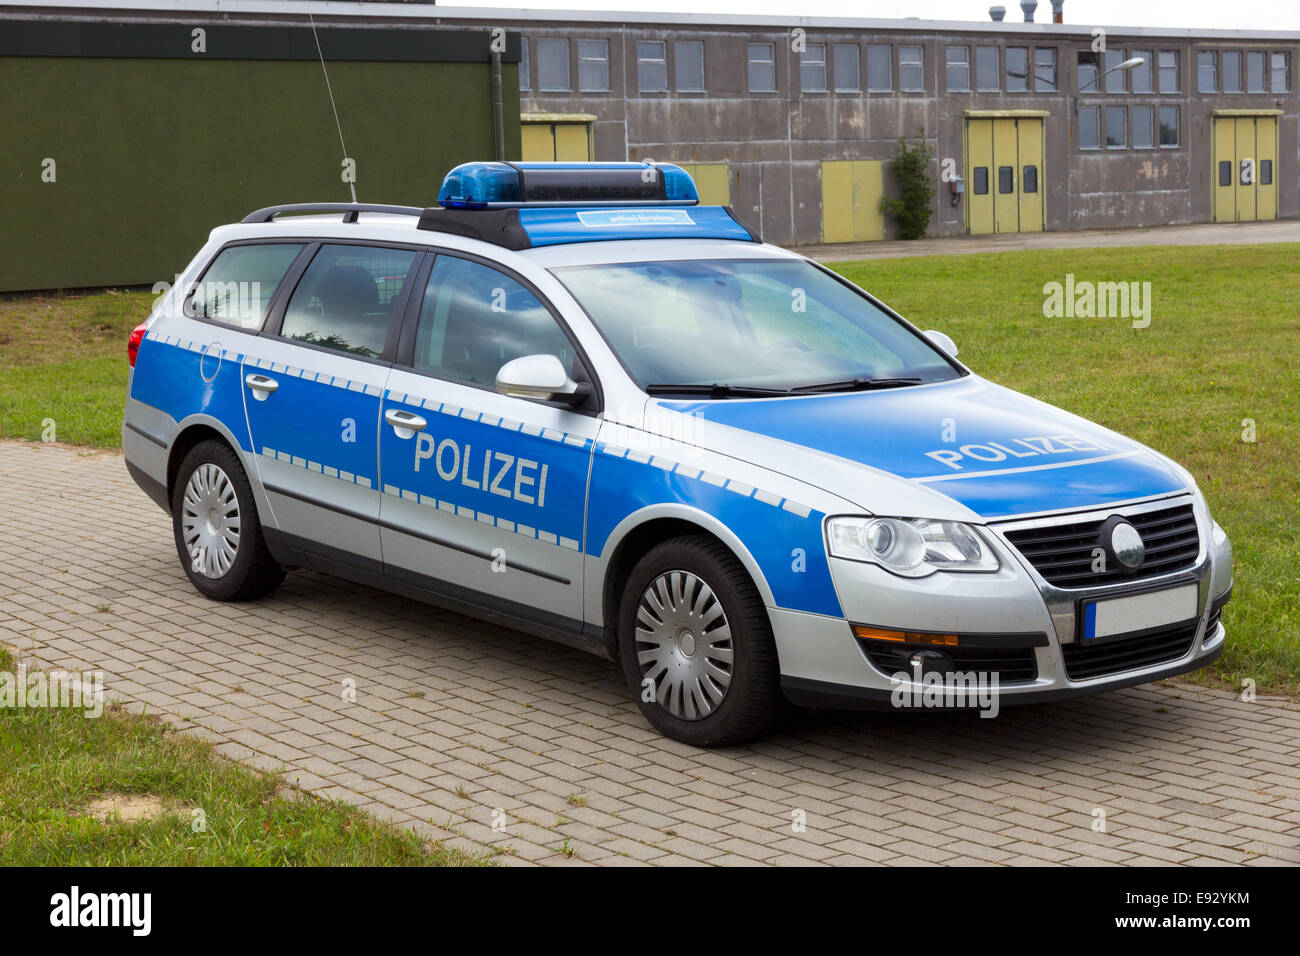 Voiture de police allemand Banque D'Images